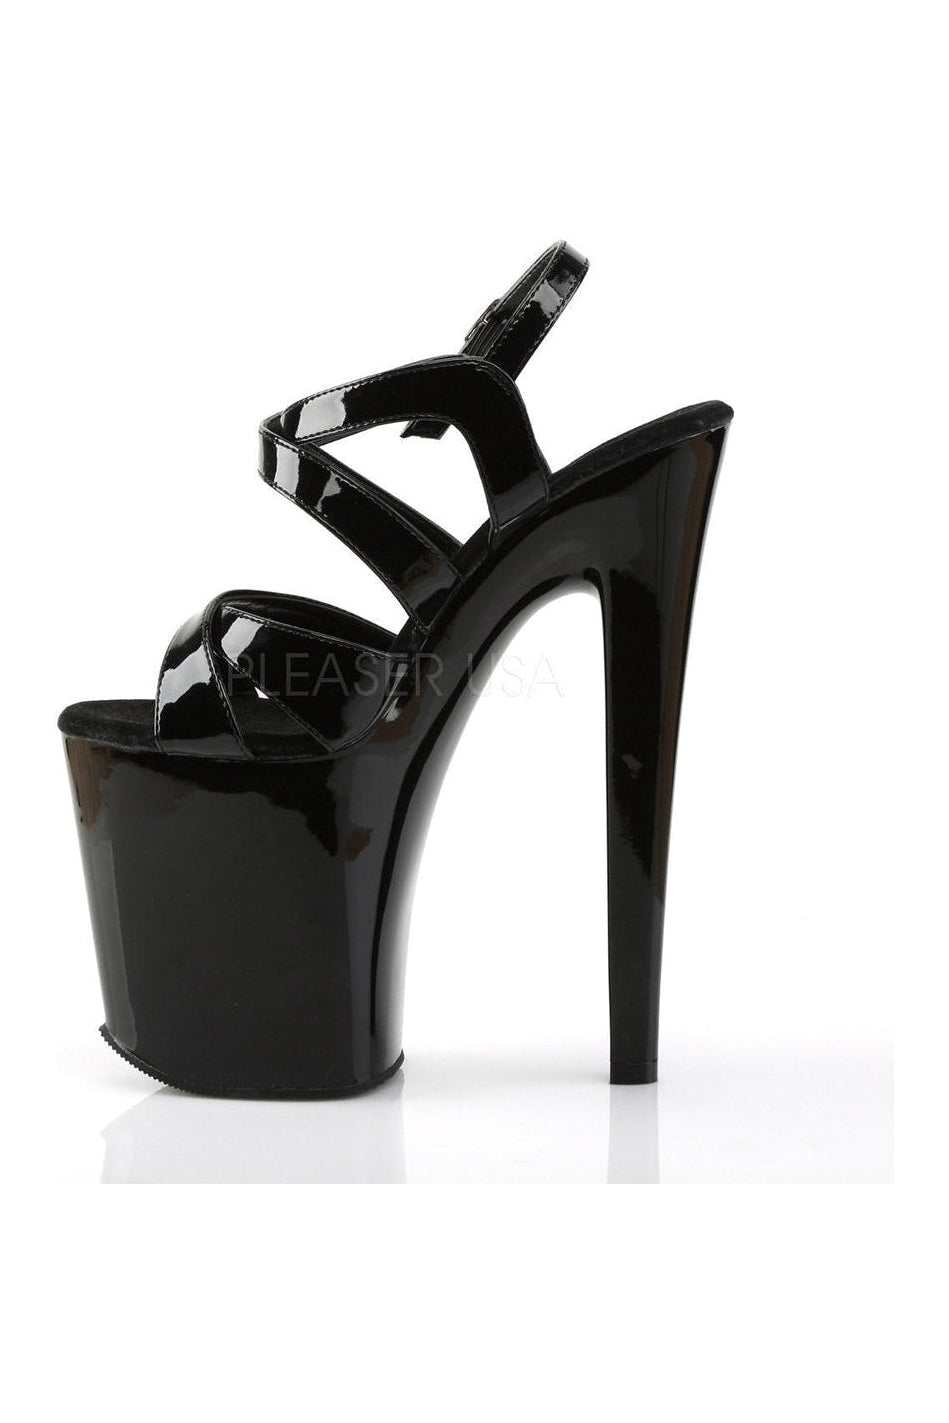 XTREME-872 Platform Sandal | Black Patent-Pleaser-Sandals-SEXYSHOES.COM